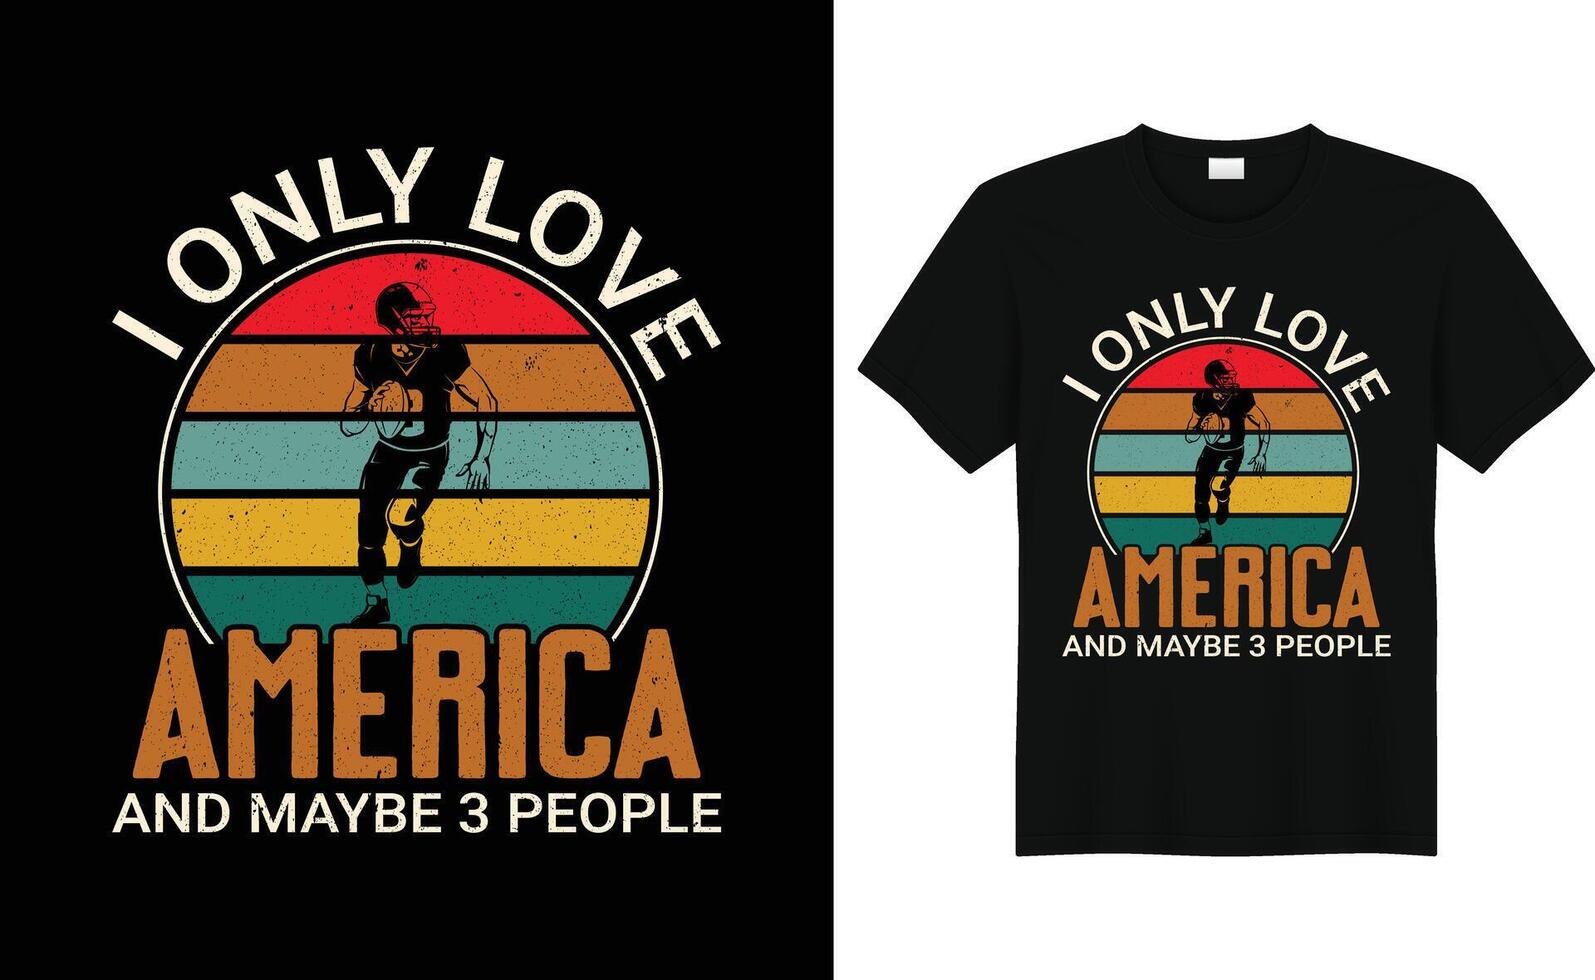 komisch amerikanisch Fußball Liebhaber retro Jahrgang T-Shirt Design vektor